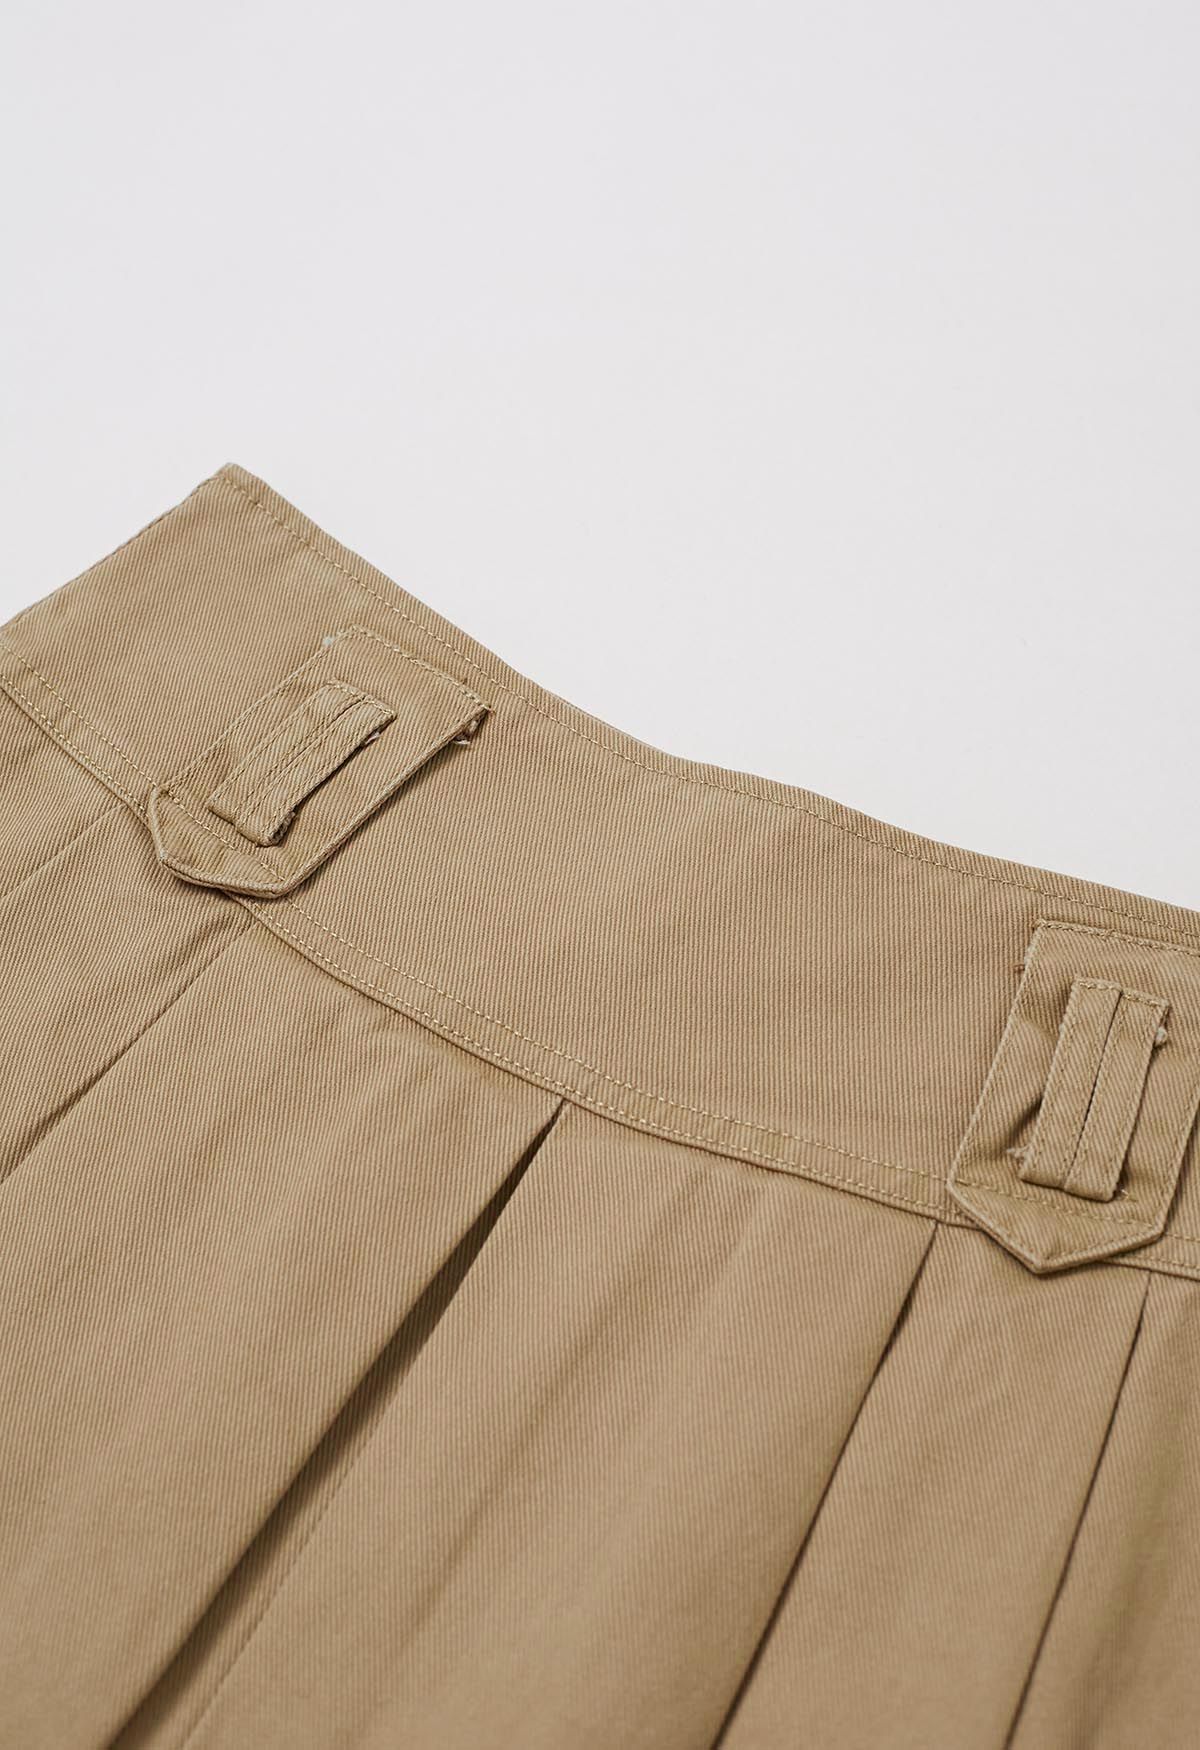 تنورة قصيرة من الدنيم ذات طيات كلاسيكية مع حزام باللون البني الفاتح